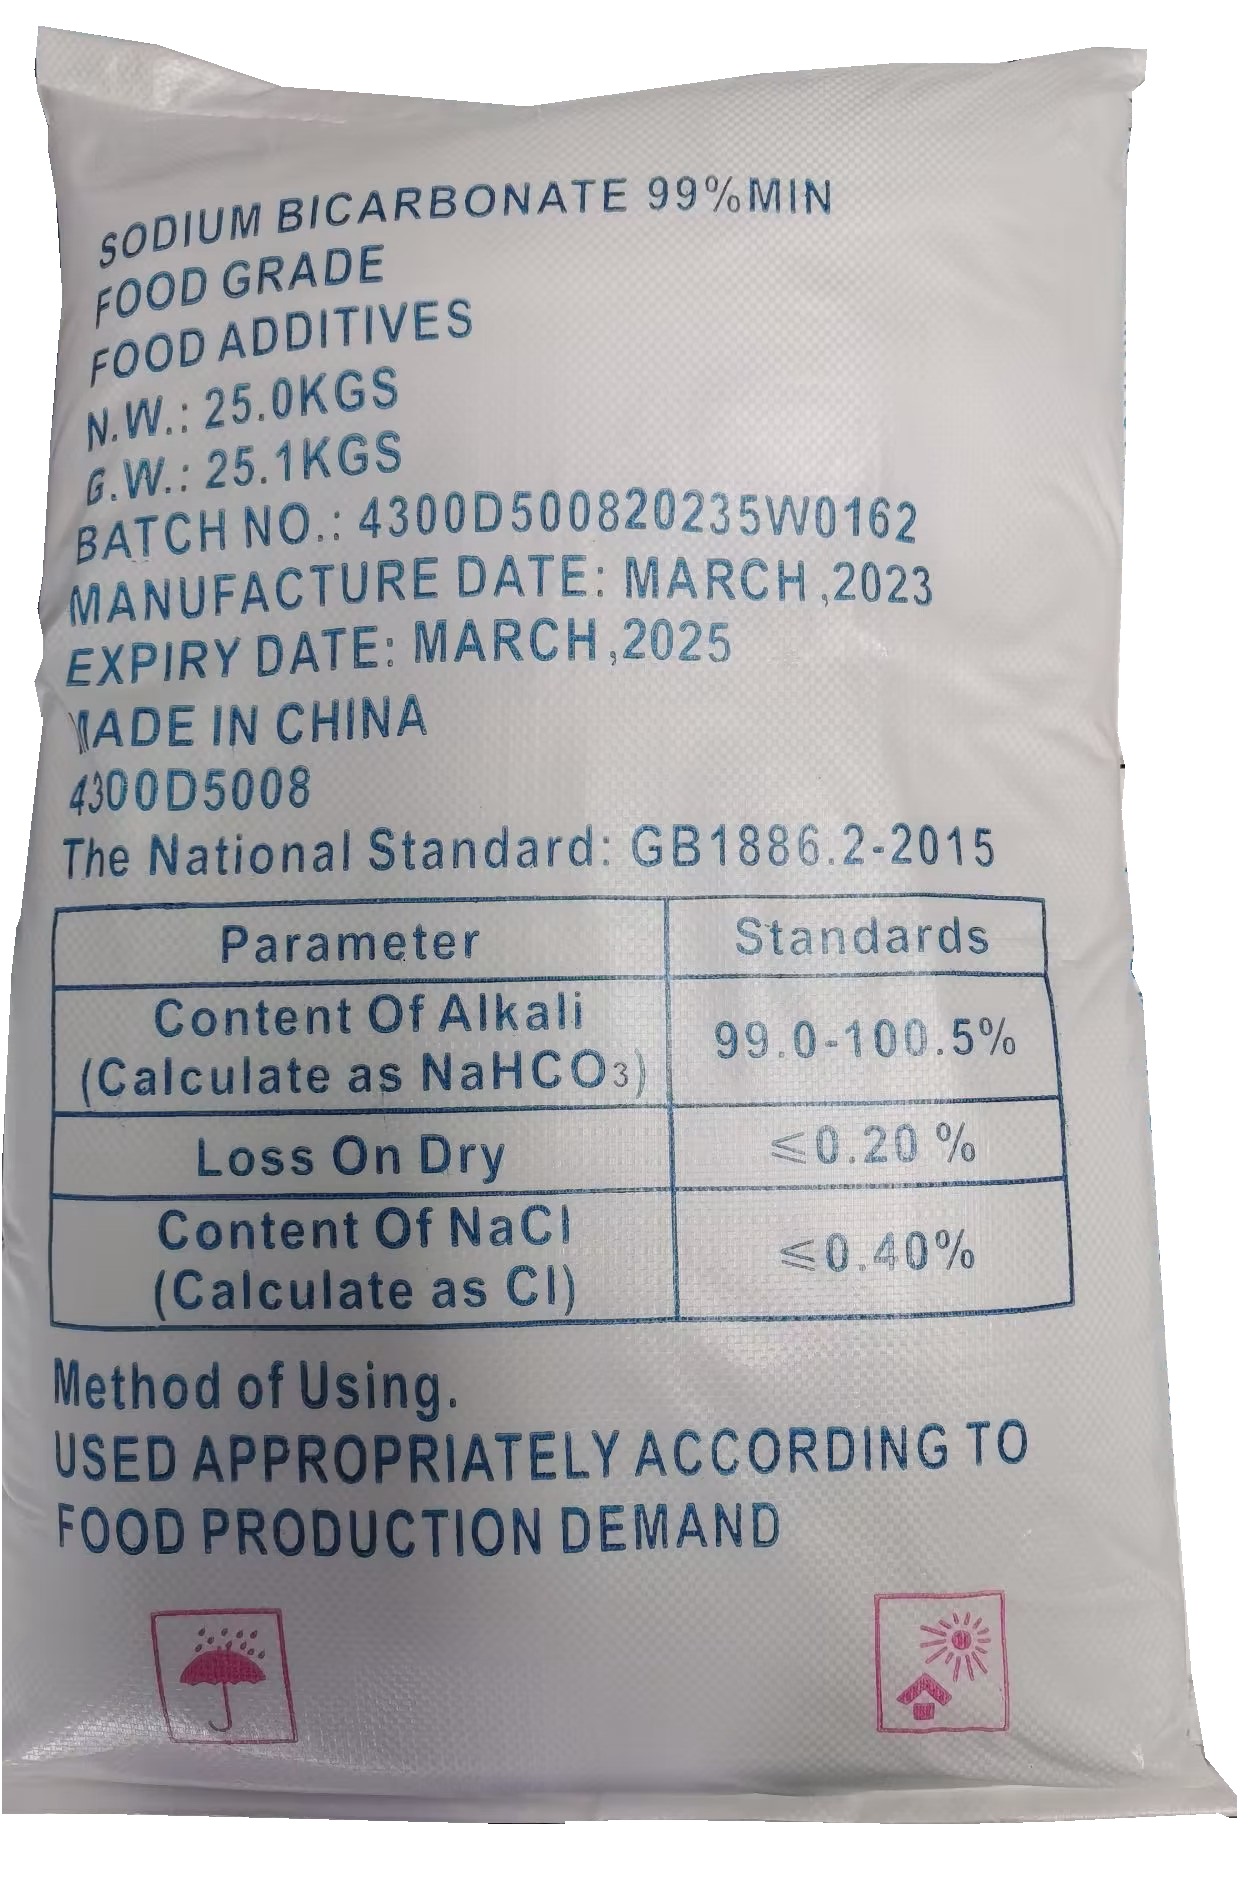 sodium bicarbonate package